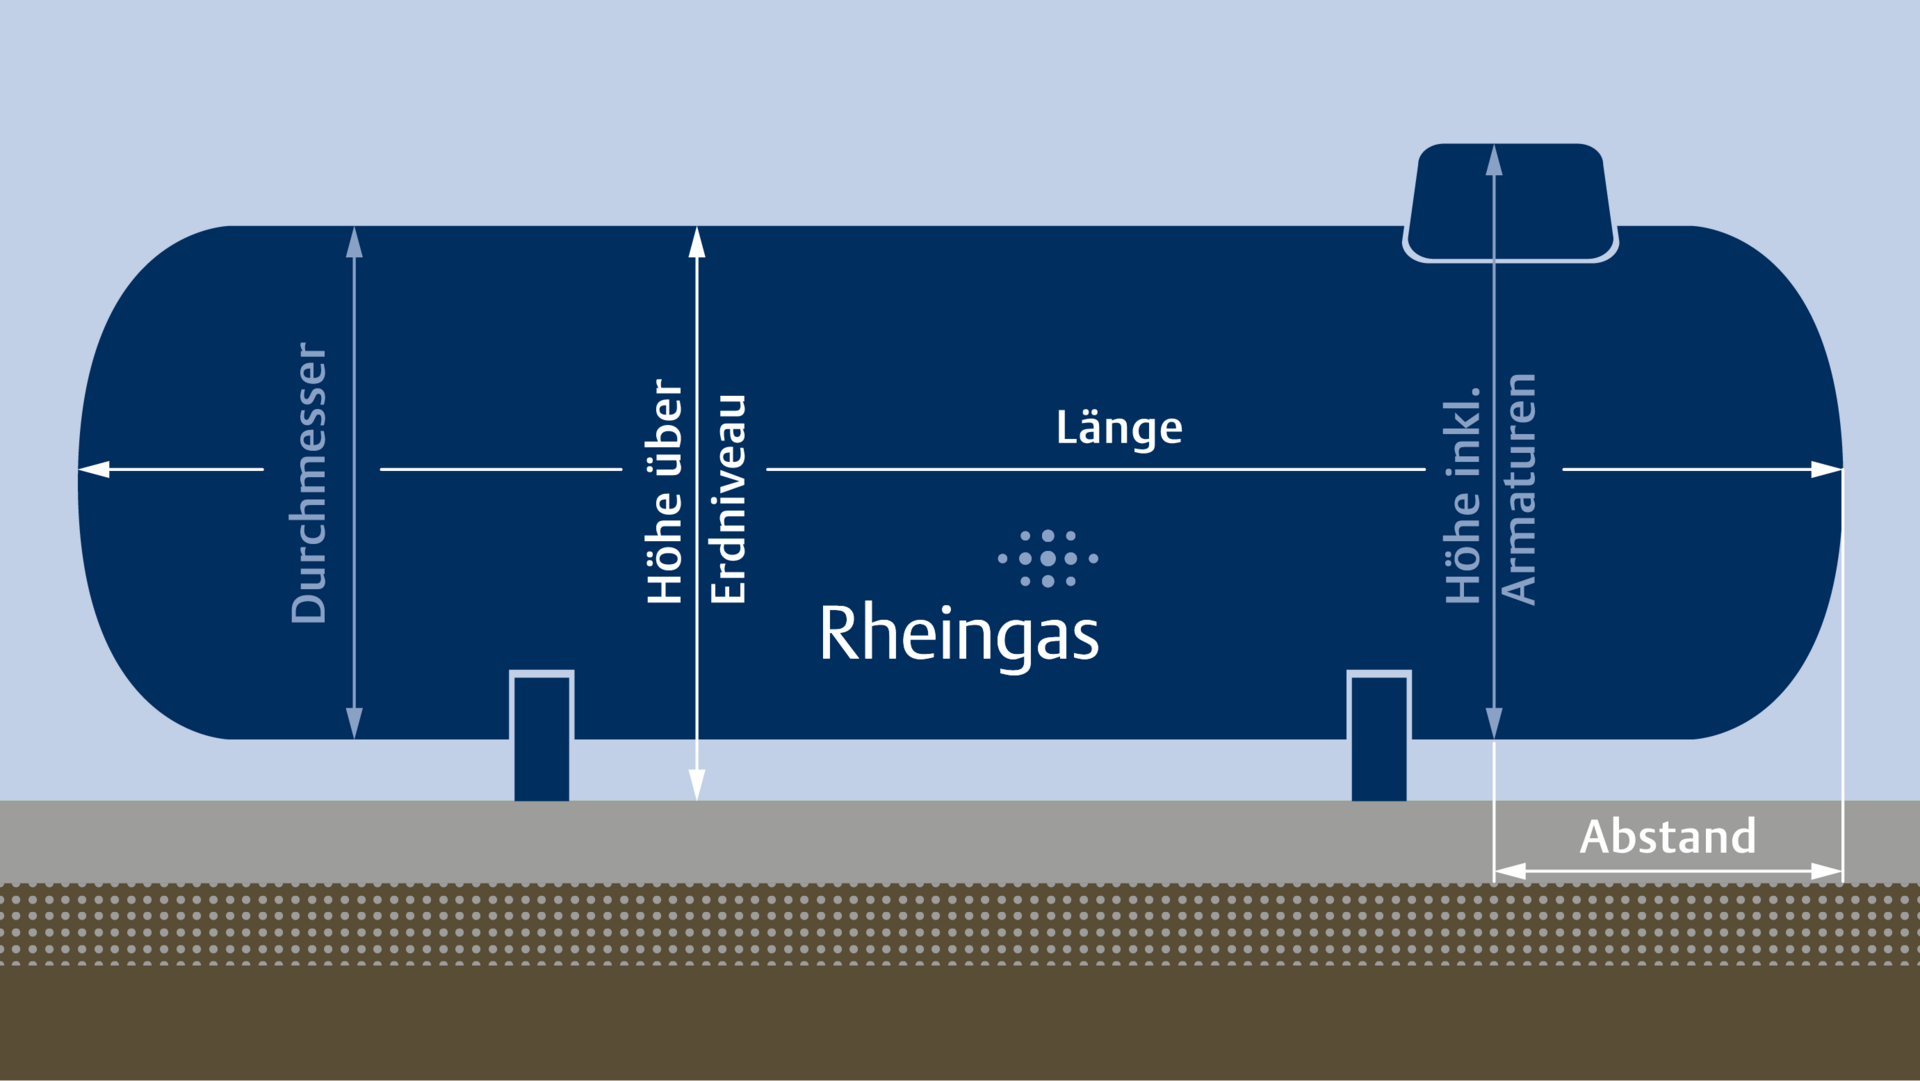 Infografik zu den Maßen eines oberirdischen Flüssiggastanks von Rheingas.